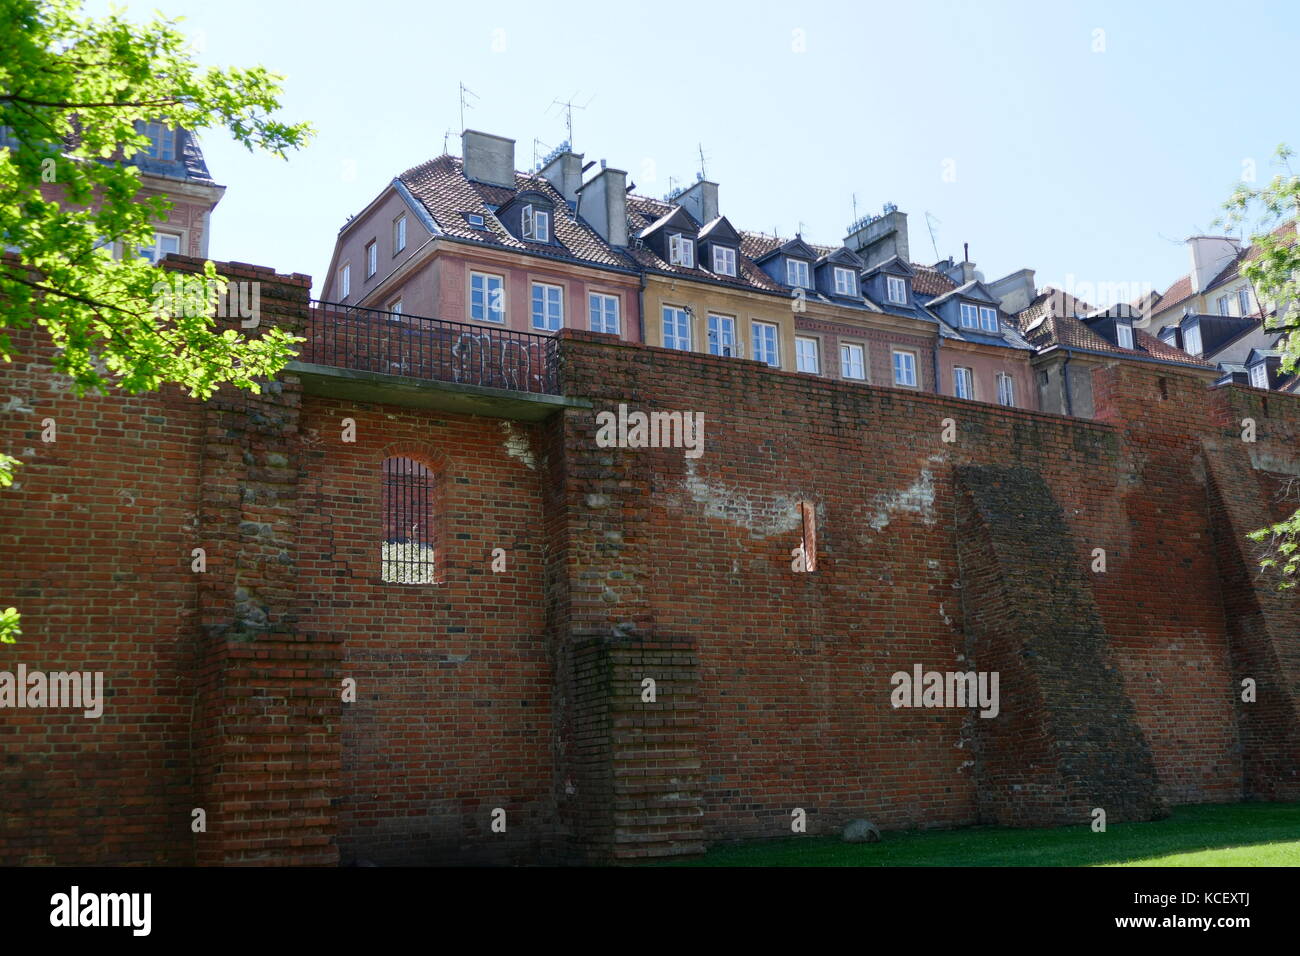 Foto von der Stadtmauer in Warschau, Polen, und eine der wenigen verbliebenen Relikte des komplexes Netzwerk von historischen Befestigungsanlagen, die nach Warschau umgeben. Vom 21. Jahrhundert Stockfoto